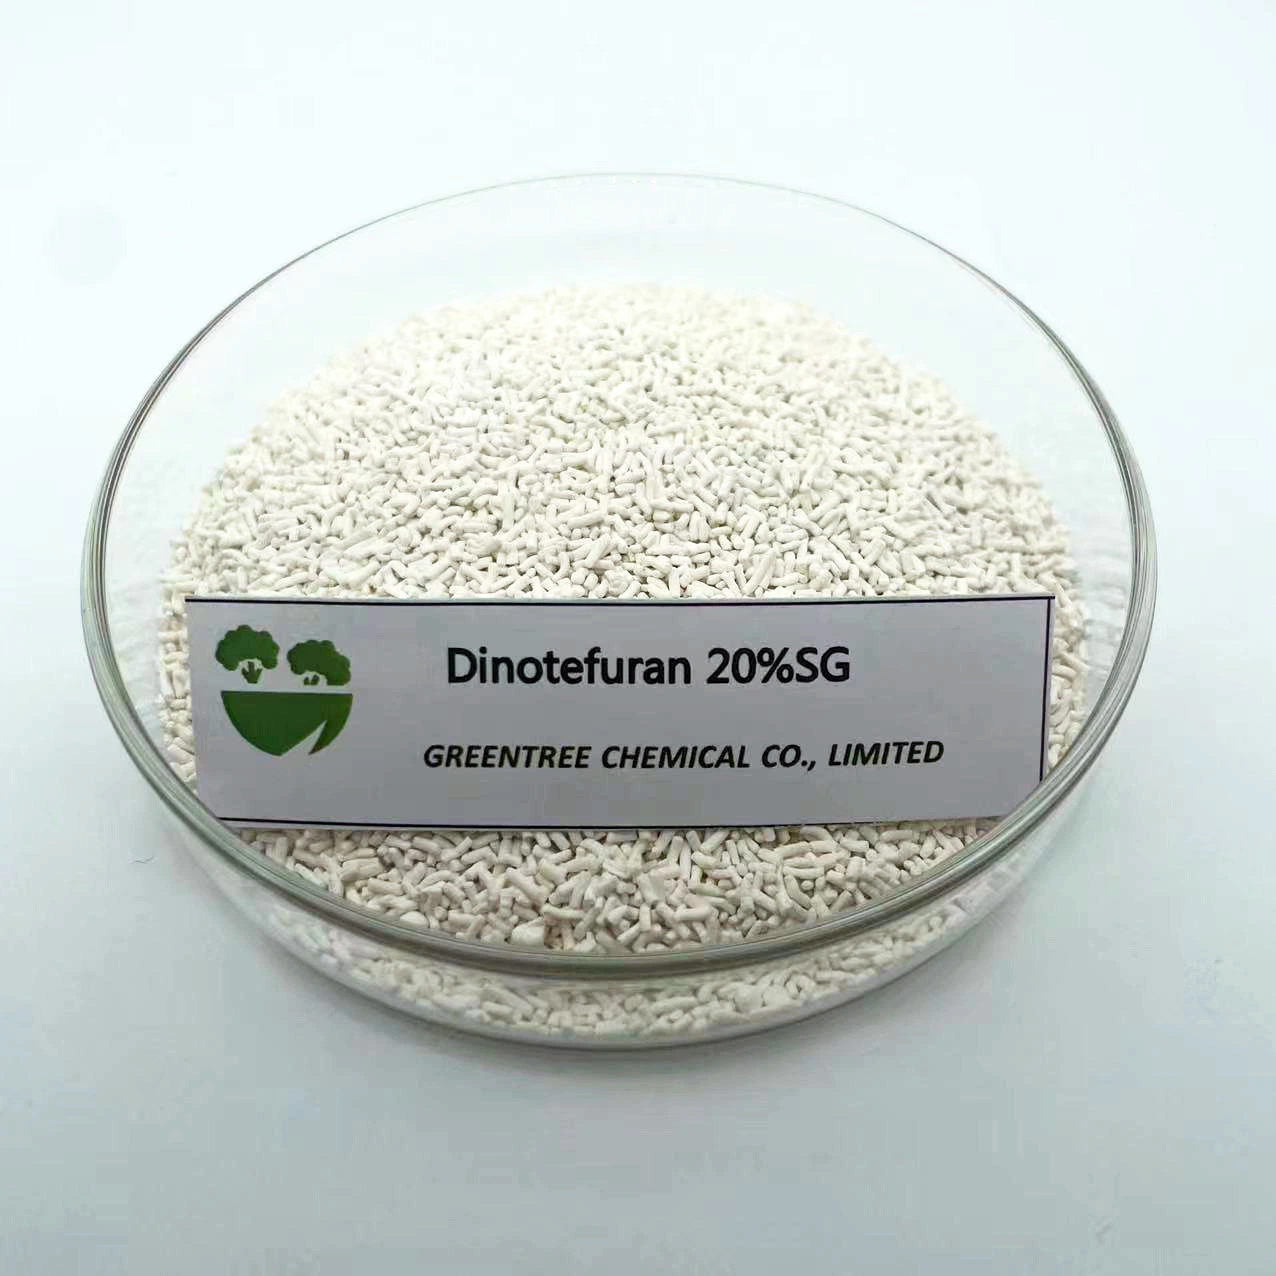 Пестицид Dinotefuran CAS: 165252-70-0 является неонатоиноидным инсектицидом 20% Sg